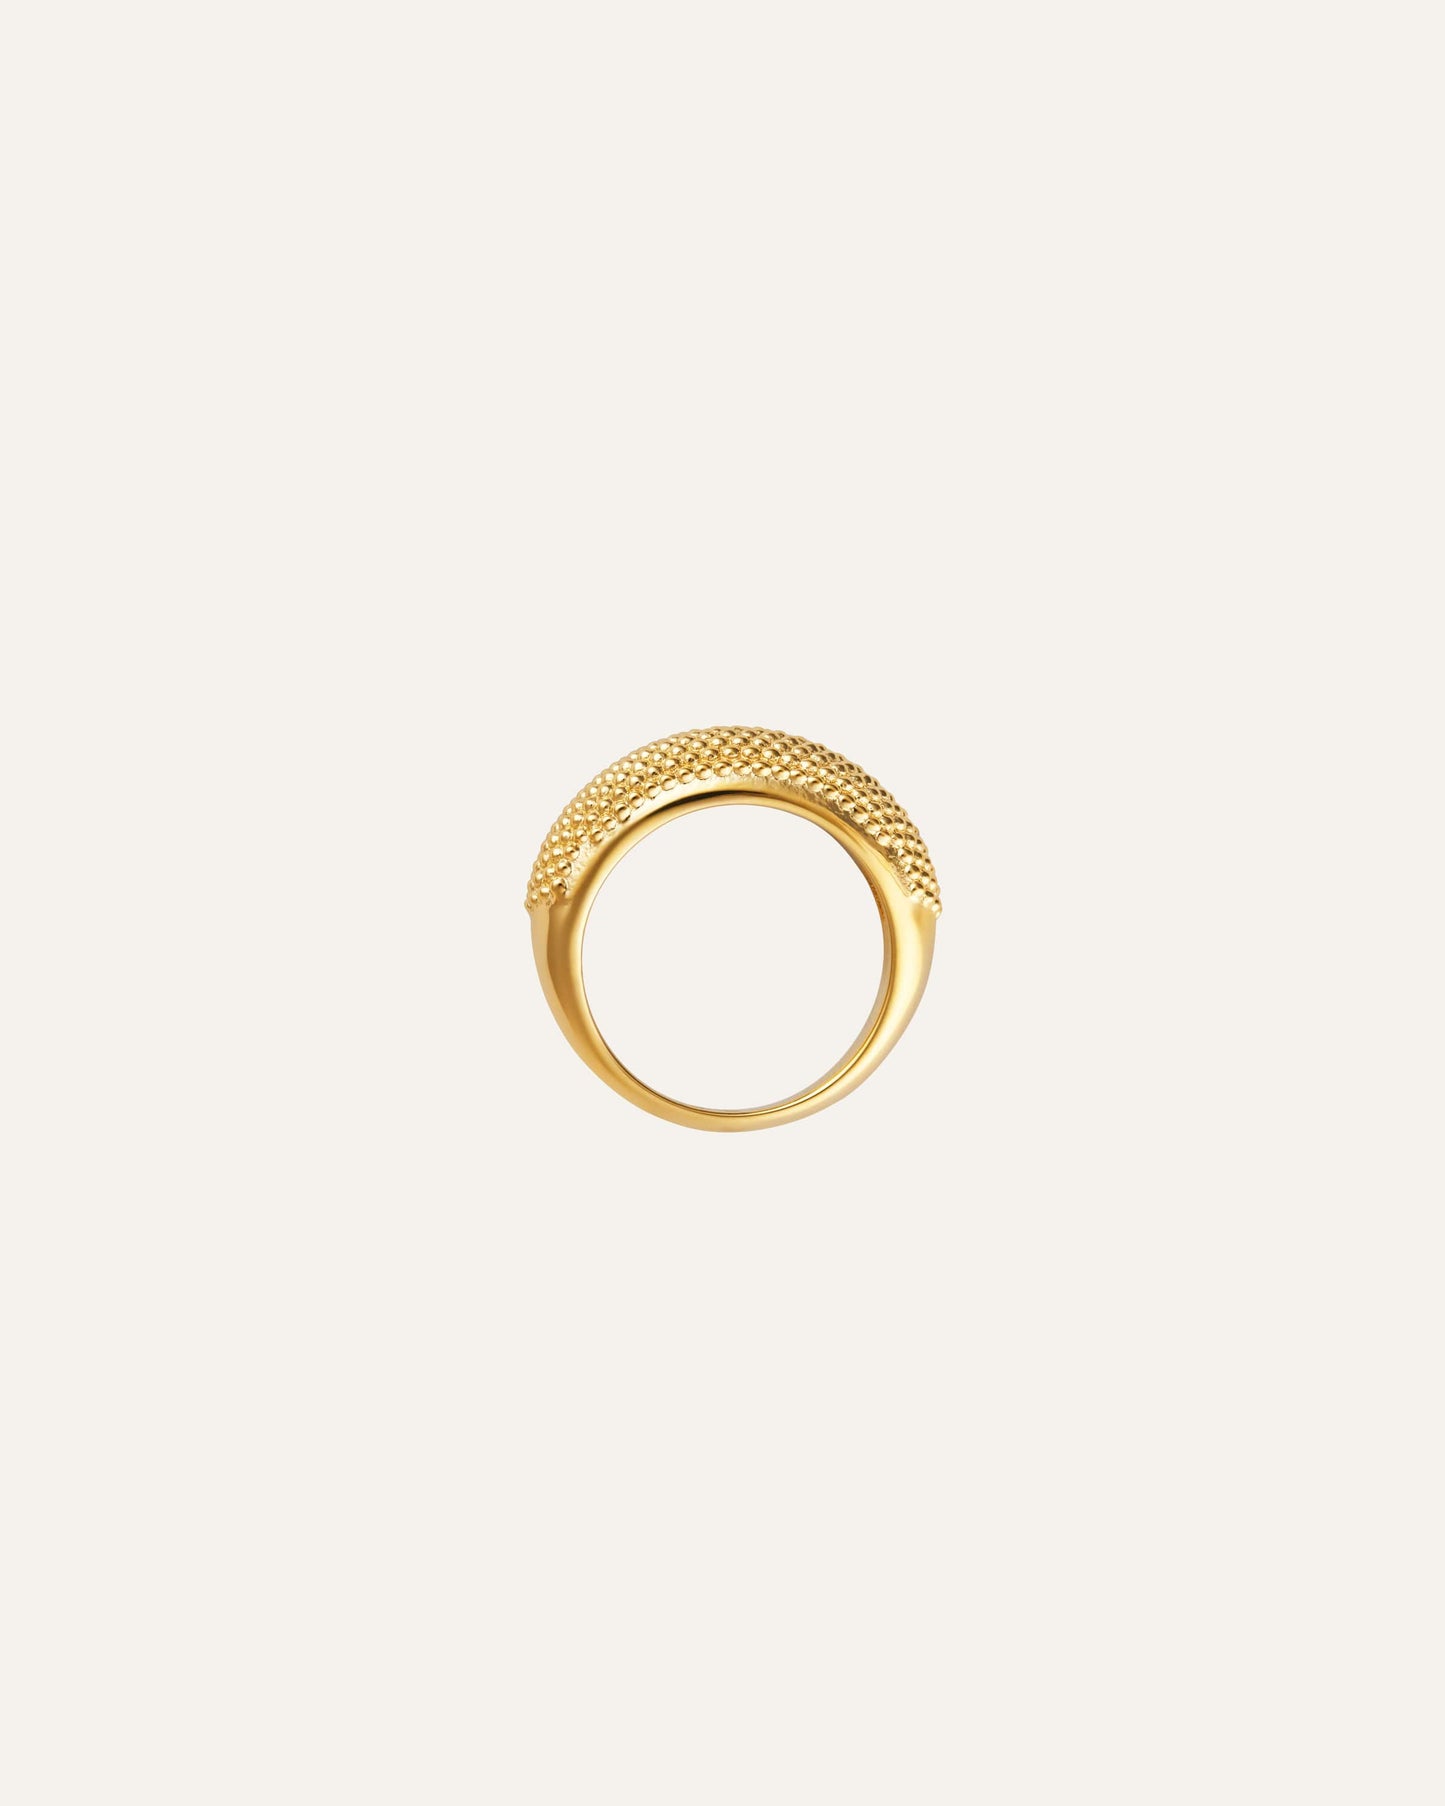 Honey Gold Ring